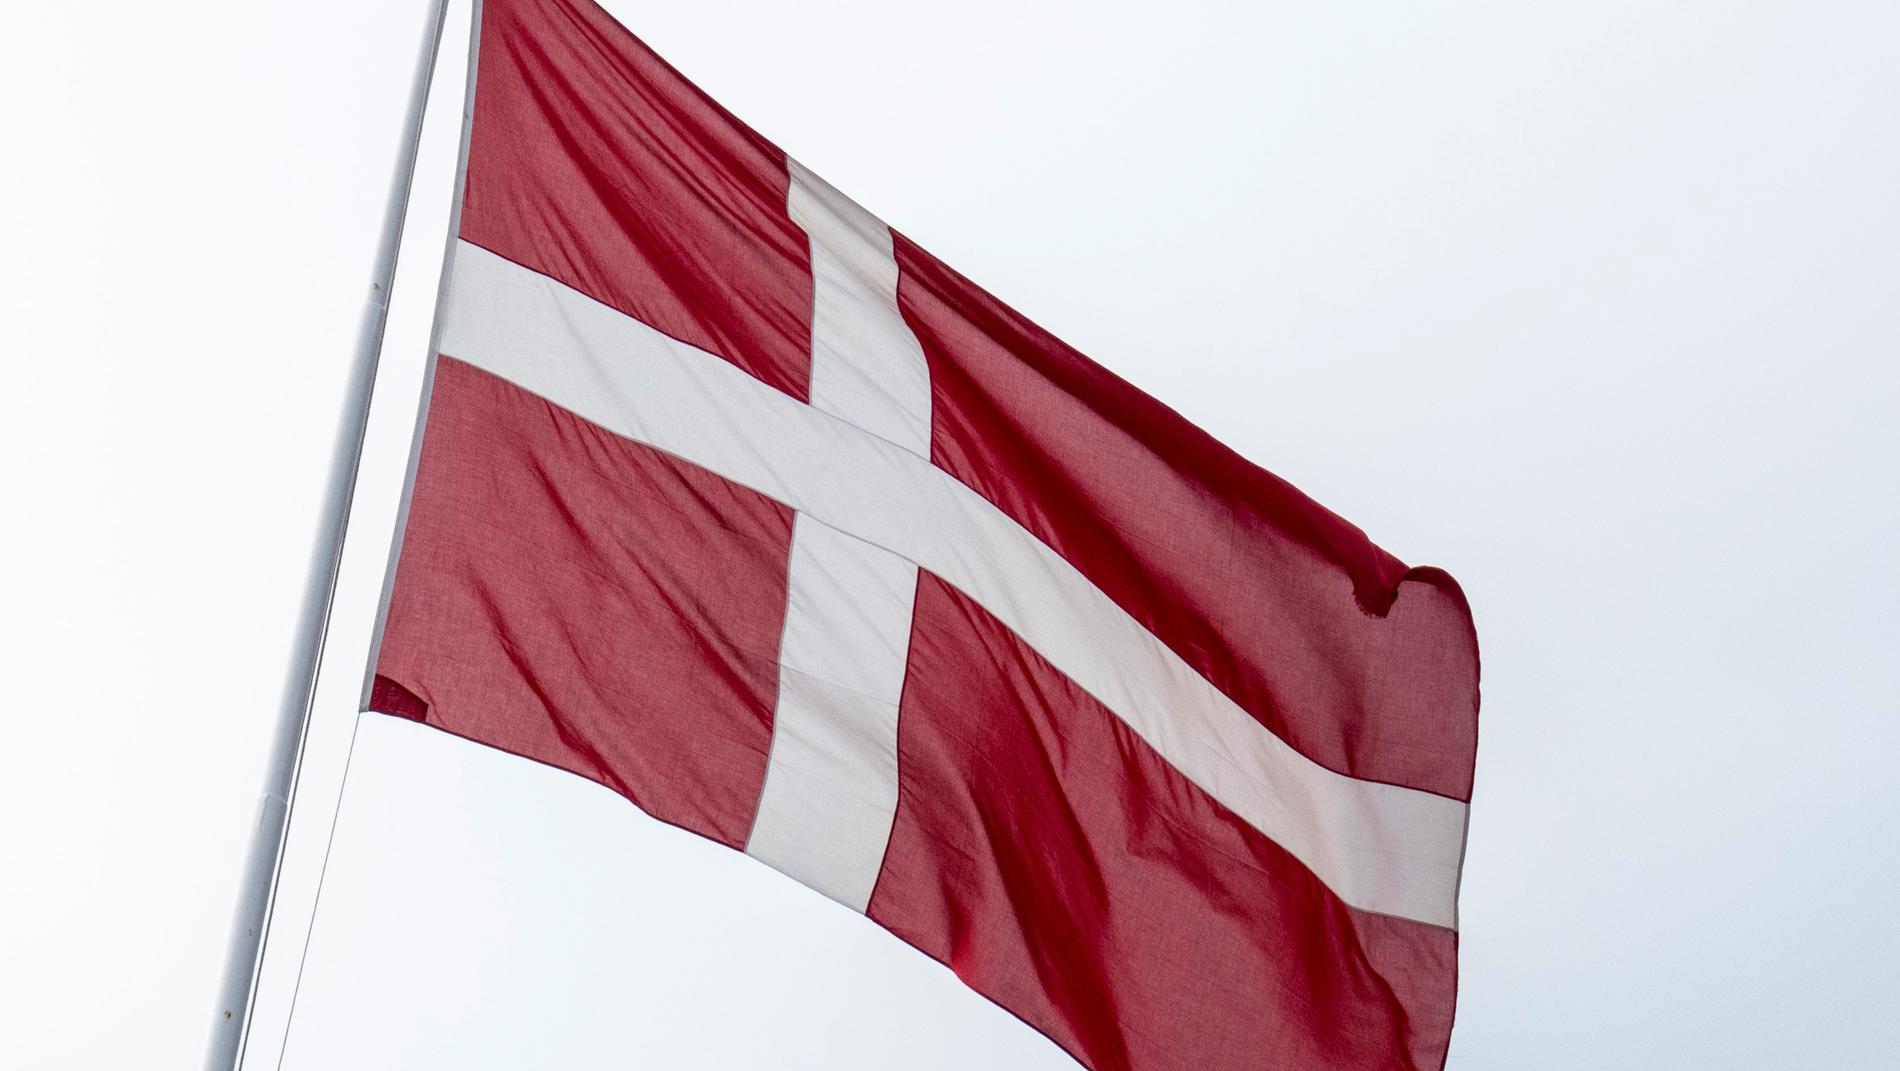 Fyra personer döms till fängelse och utvisning för terrorbrott i Danmark. Arkivbild.